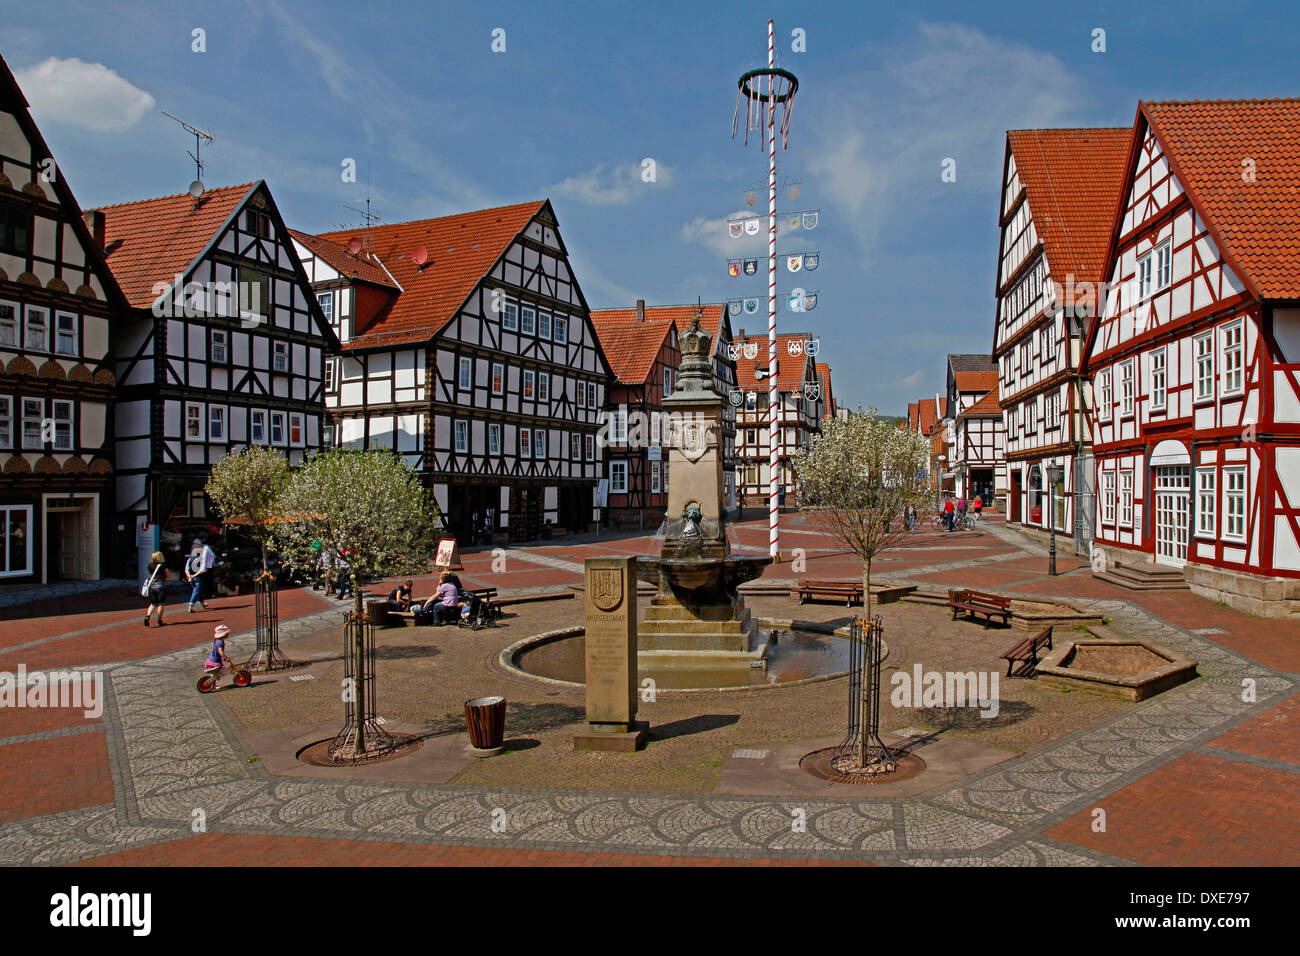 Marktplatz, Marktbrunnen, Maibaum, Hofgeismar, Landkreis Kassel, Hessen, Deutschland Stockfoto